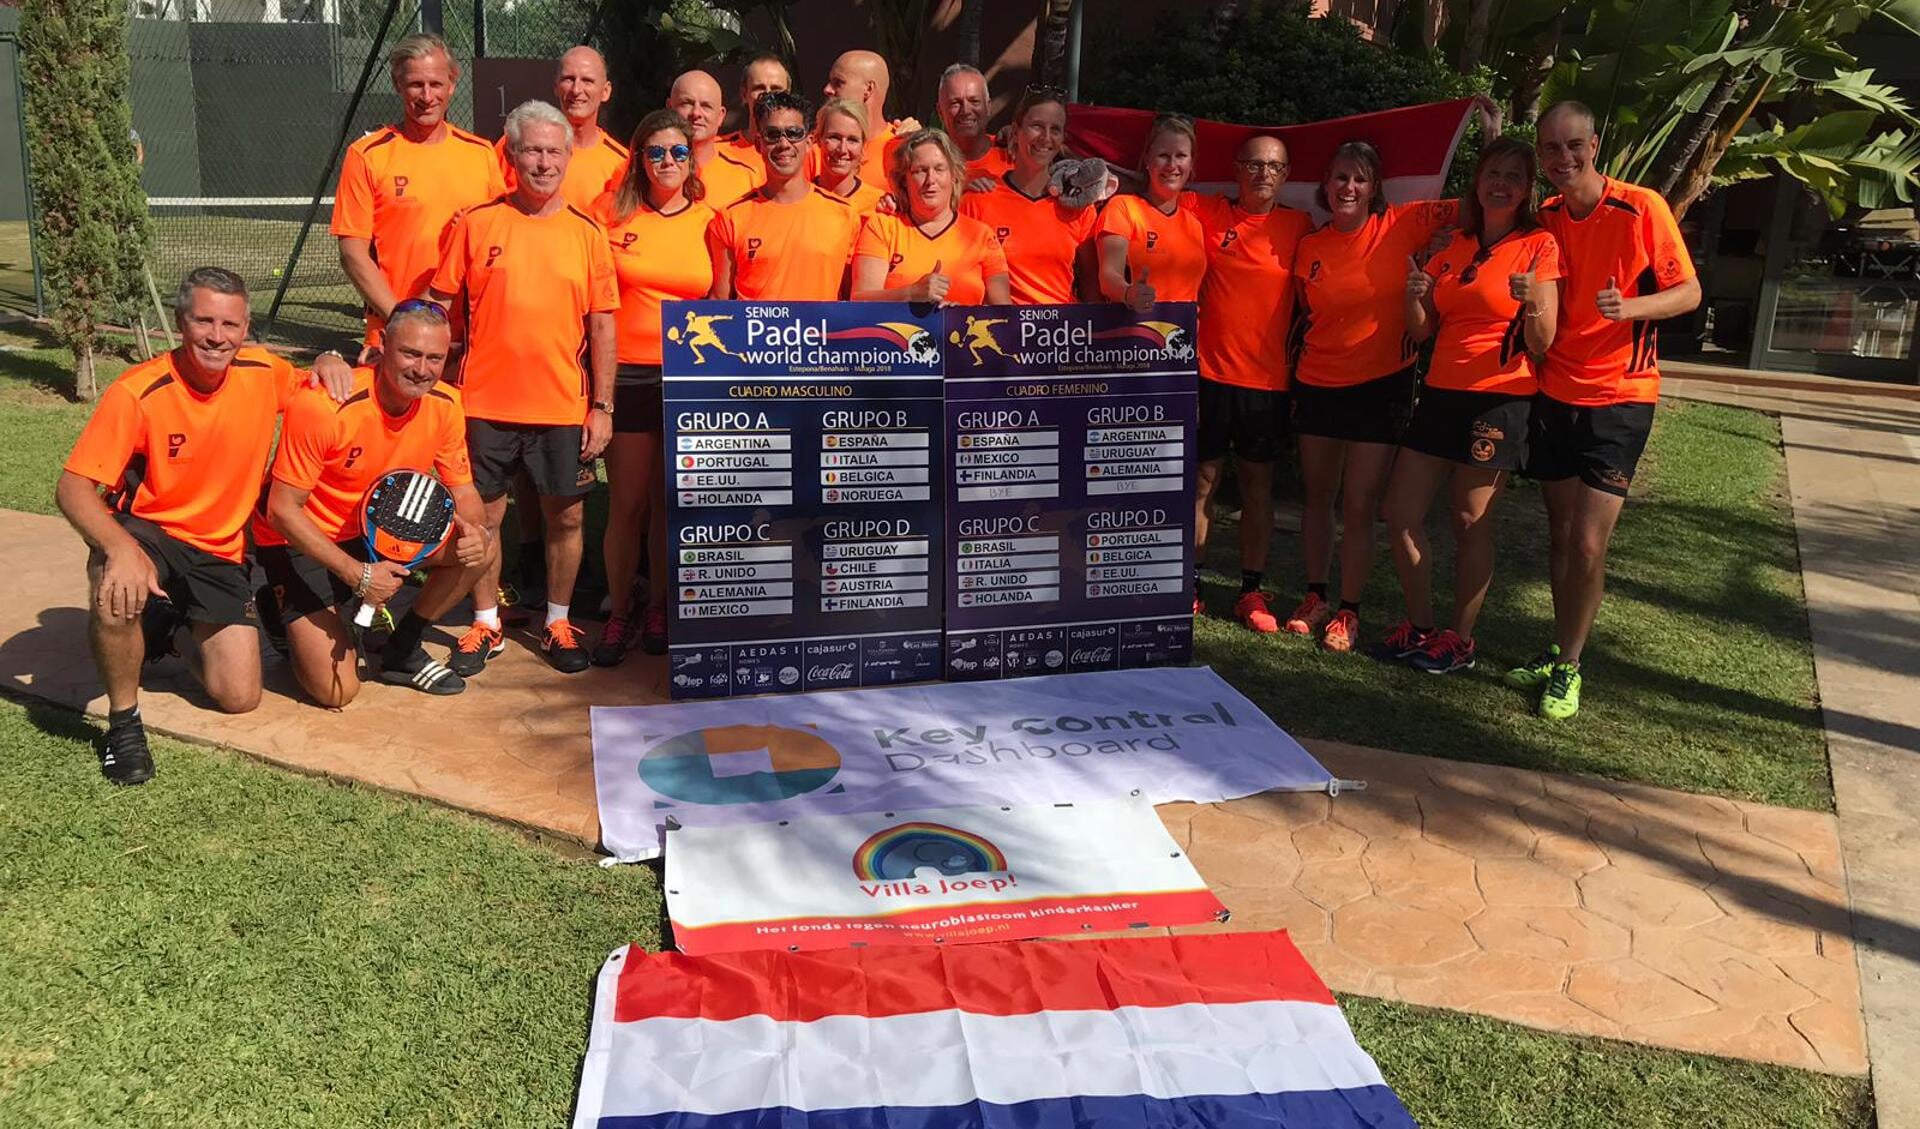 De hele Nederlandse equipe, met helemaal links Jeroen Havinga. (Foto: aangeleverd)